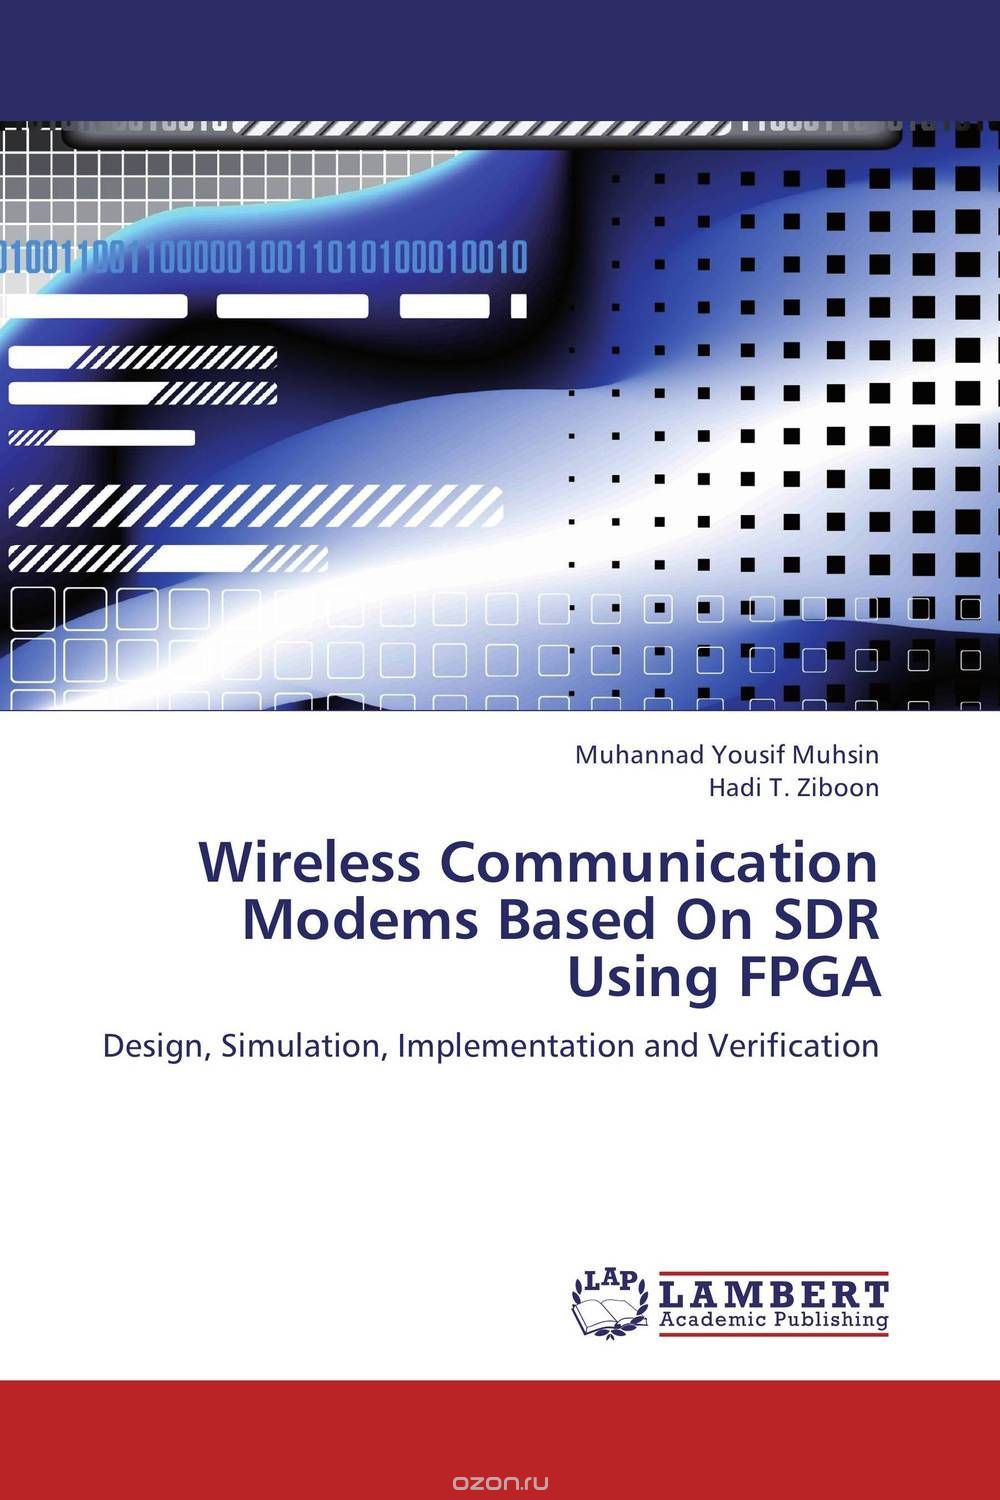 Wireless Communication Modems Based On SDR Using FPGA